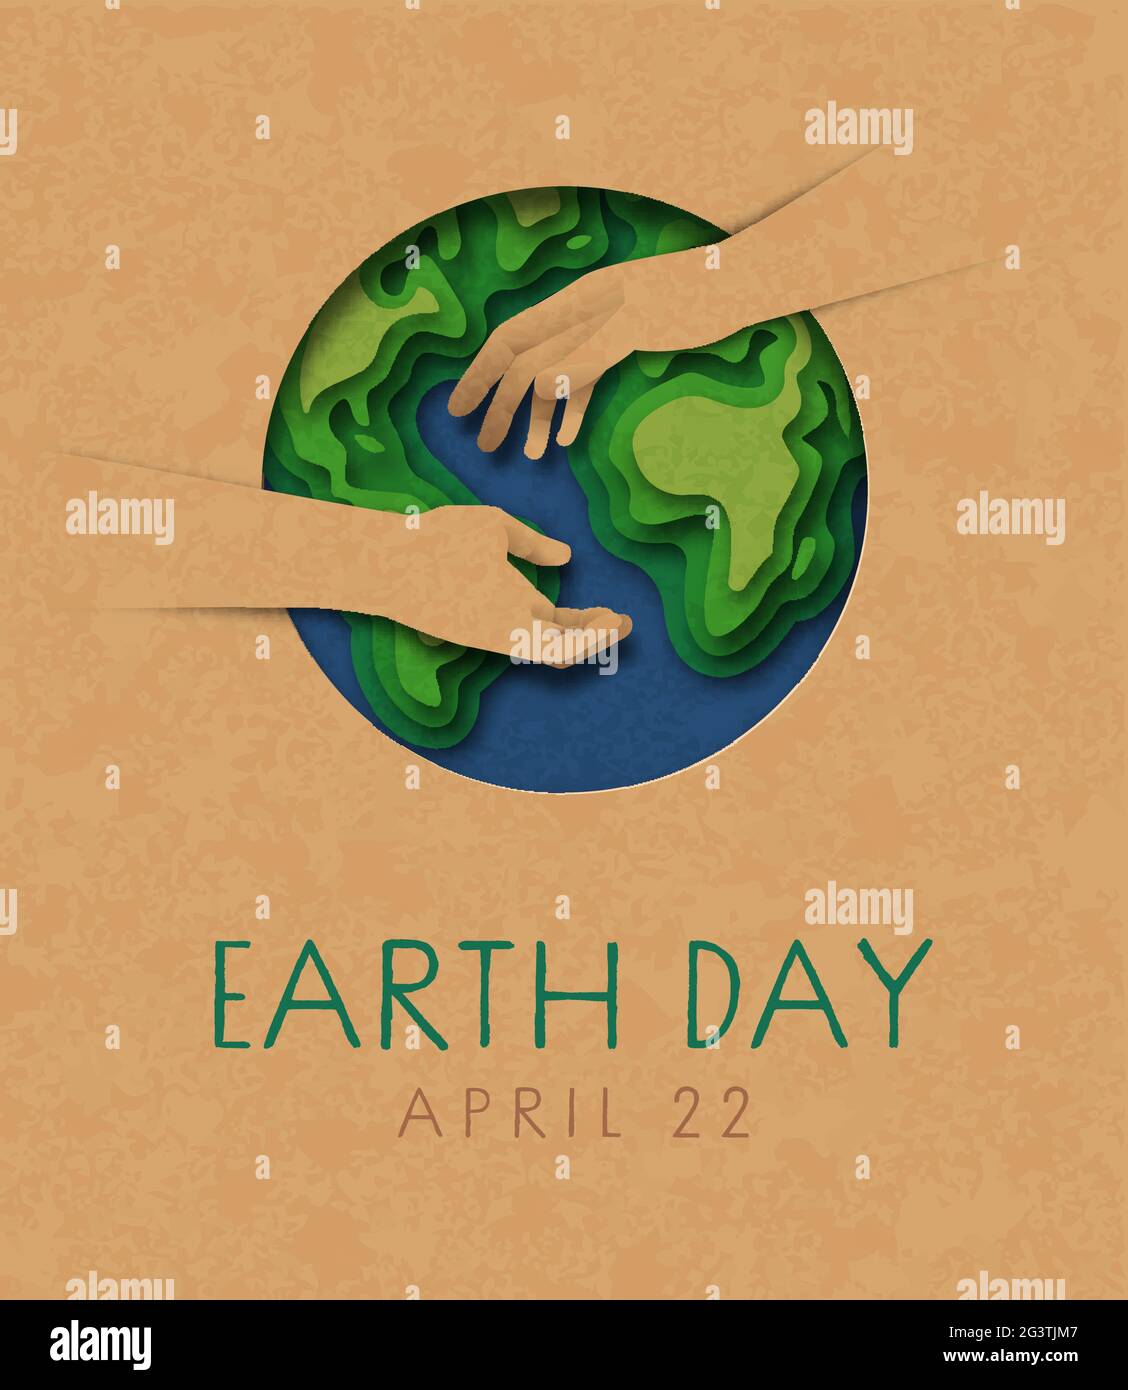 Earth Day Grußkarte Illustration von zwei Menschen Hände helfen zusammen mit Papier geschnitten grünen Planeten Karte. Natur helfen Teamwork-Konzept für april 22 i Stock Vektor